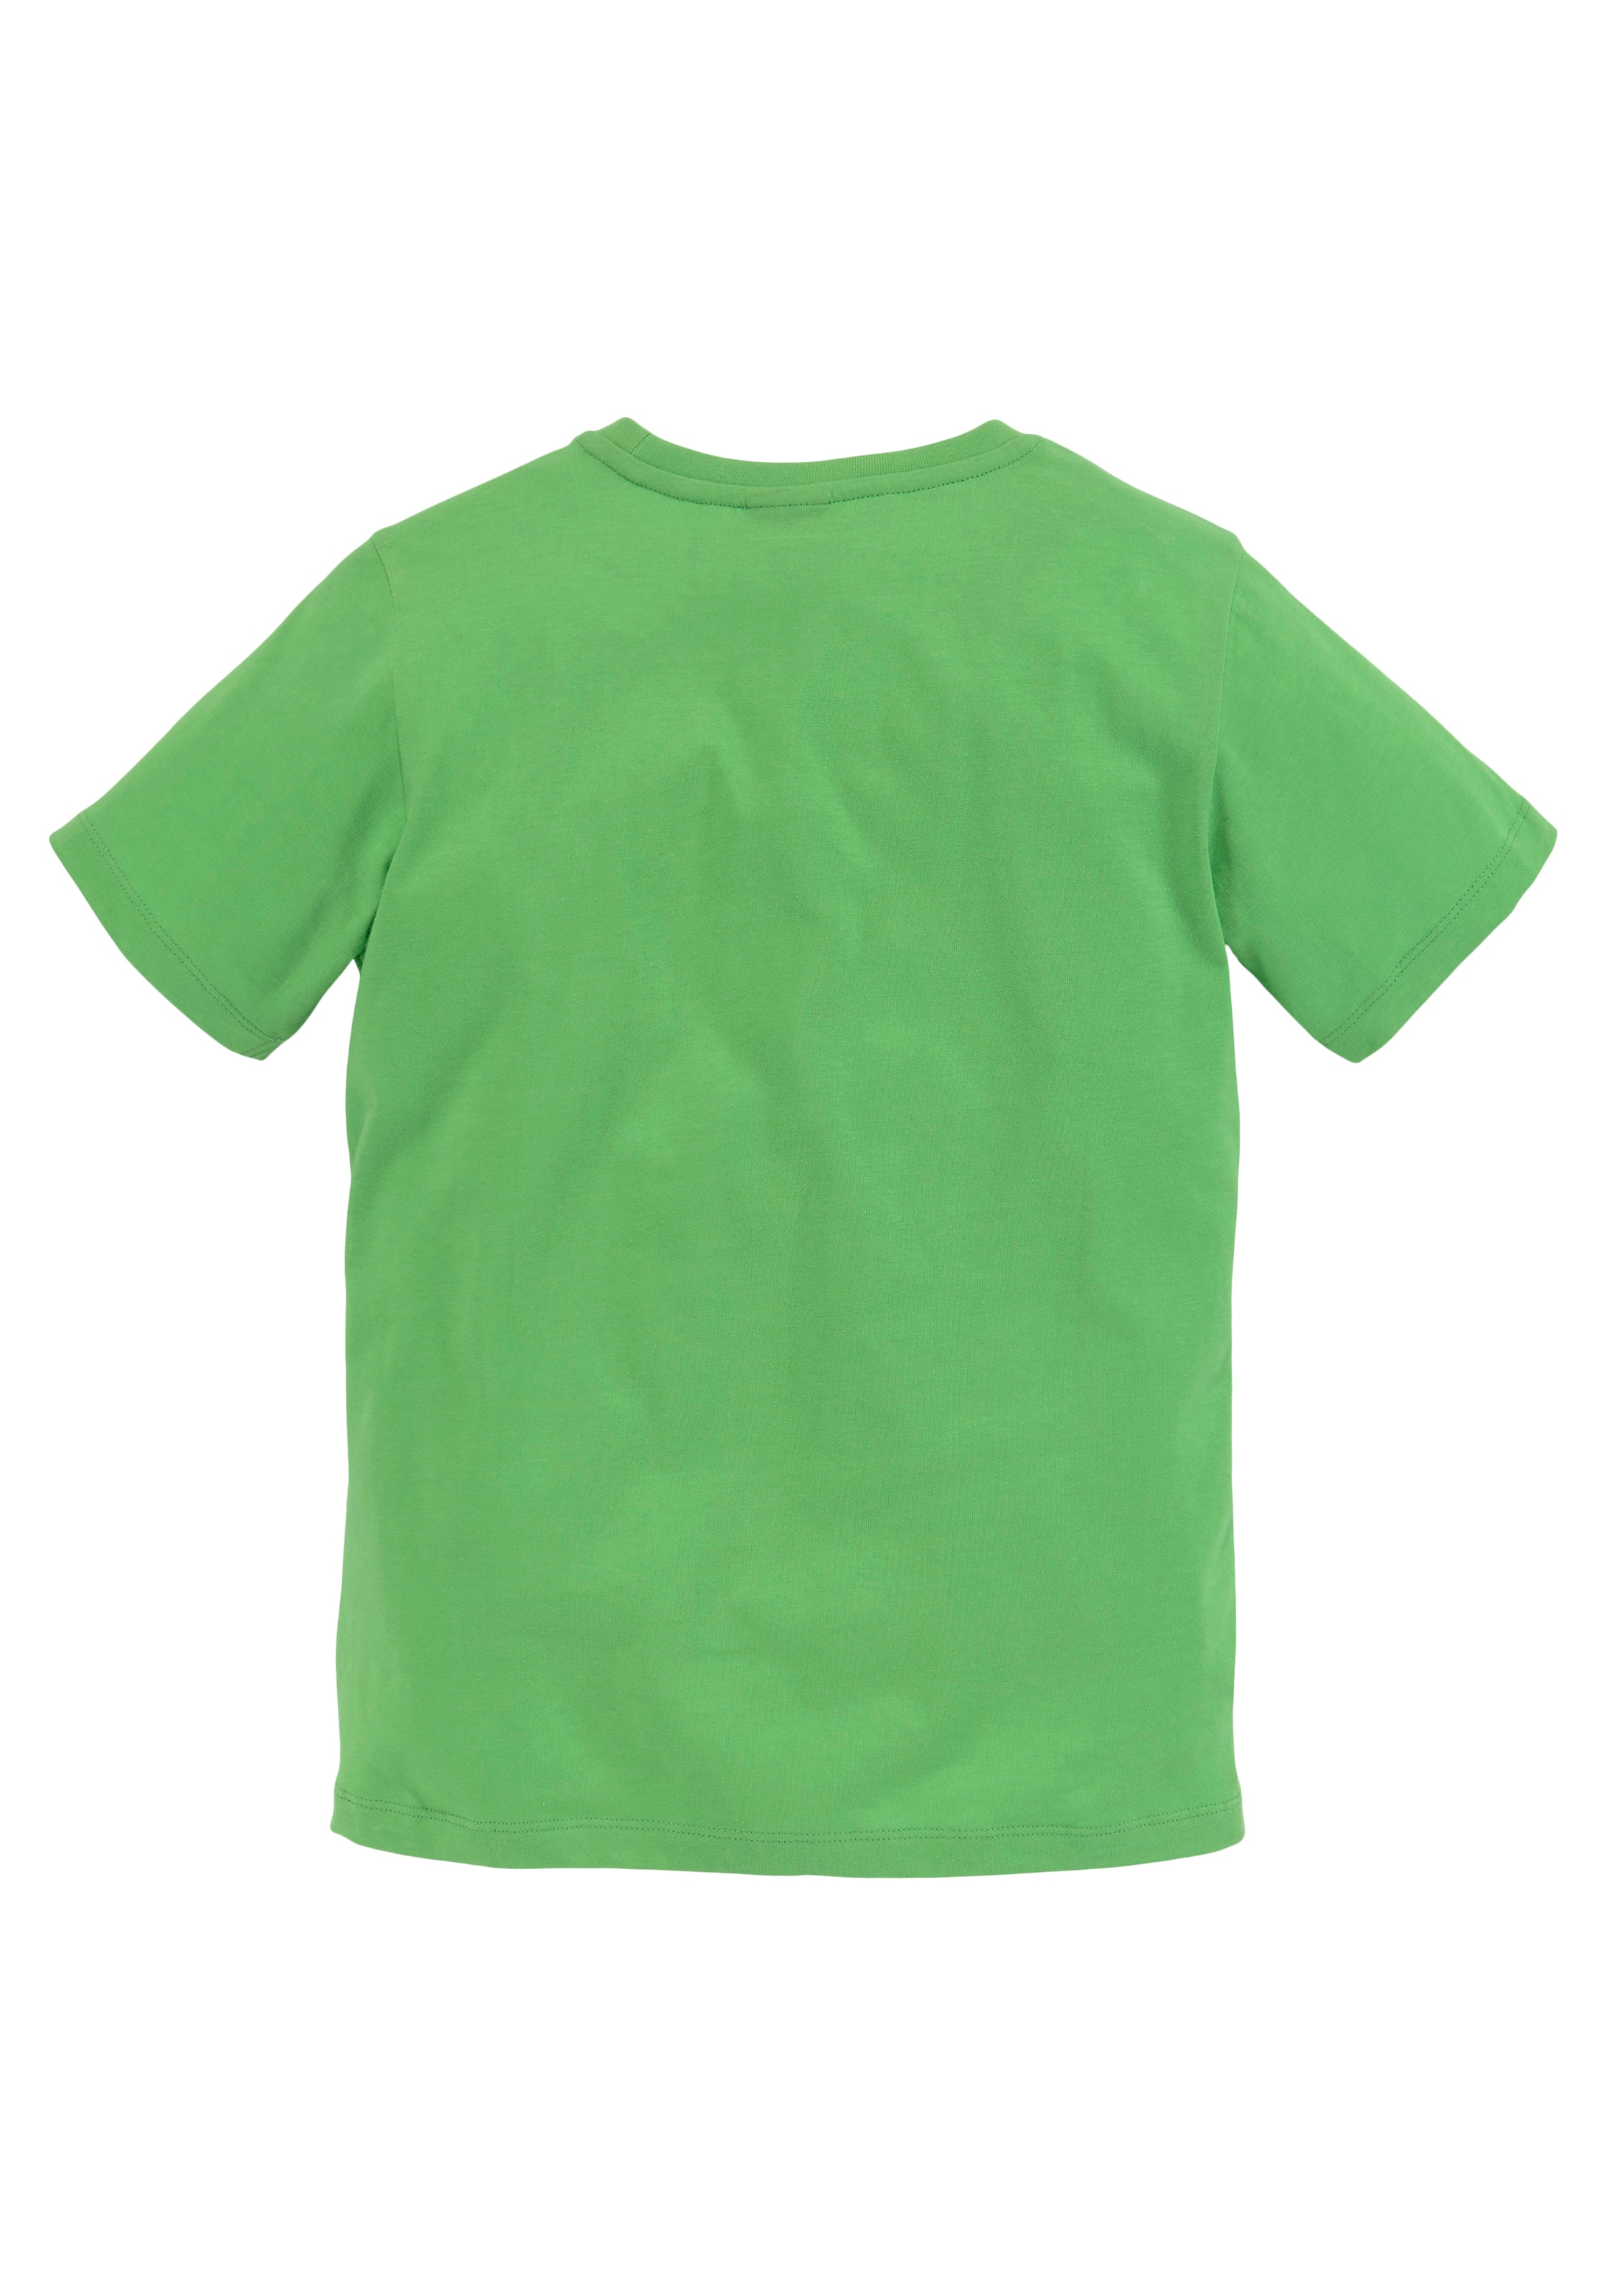 KIDSWORLD T-Shirt »KANNST DU SUBTRAHIEREN?«, Spruch online kaufen